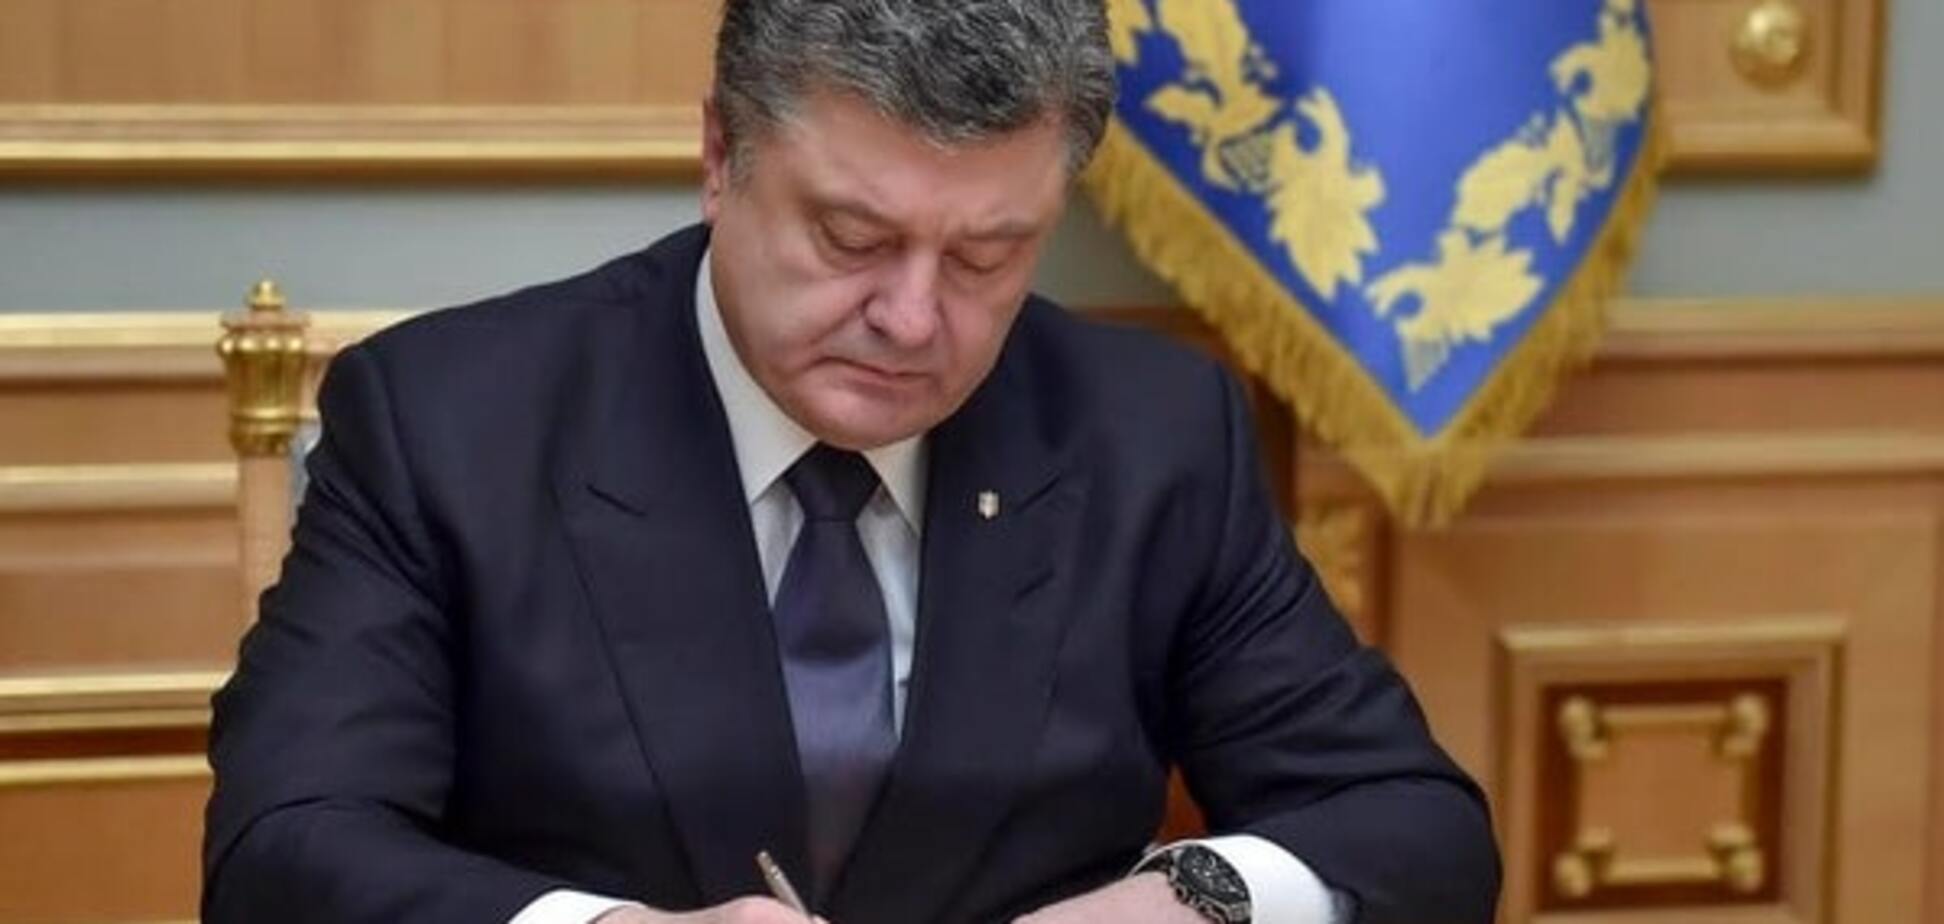 Порошенко підписав закон, що дозволяє призначити Луценка генпрокурором